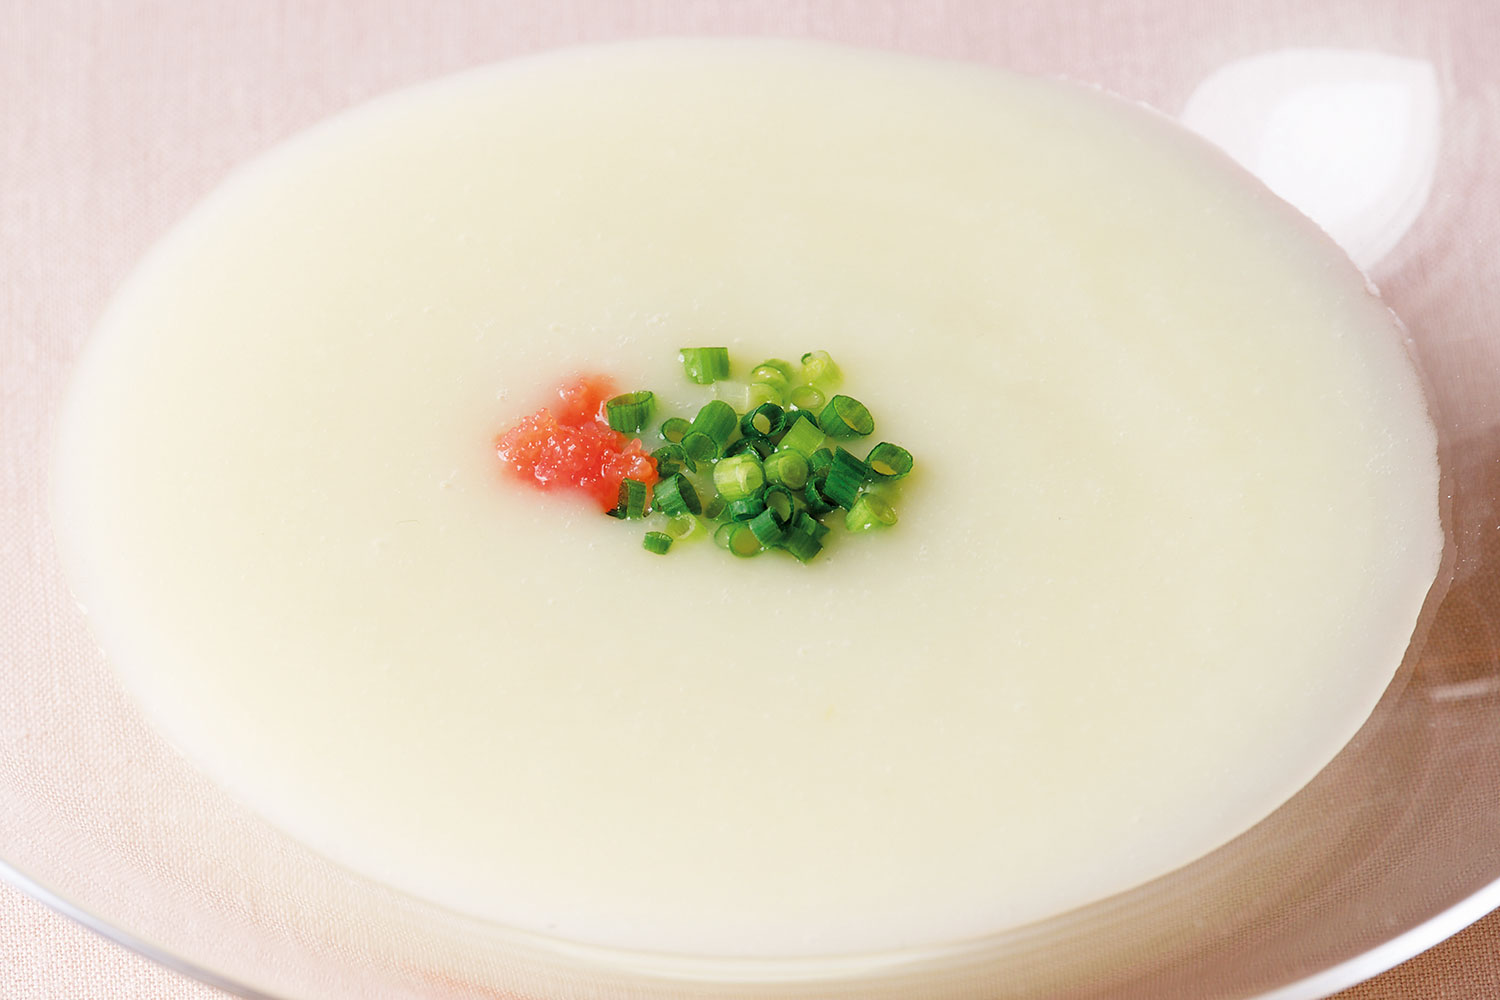 「じゃがいもの冷製ポタージュ」腸のぜん動運動を促す朝スープレシピ